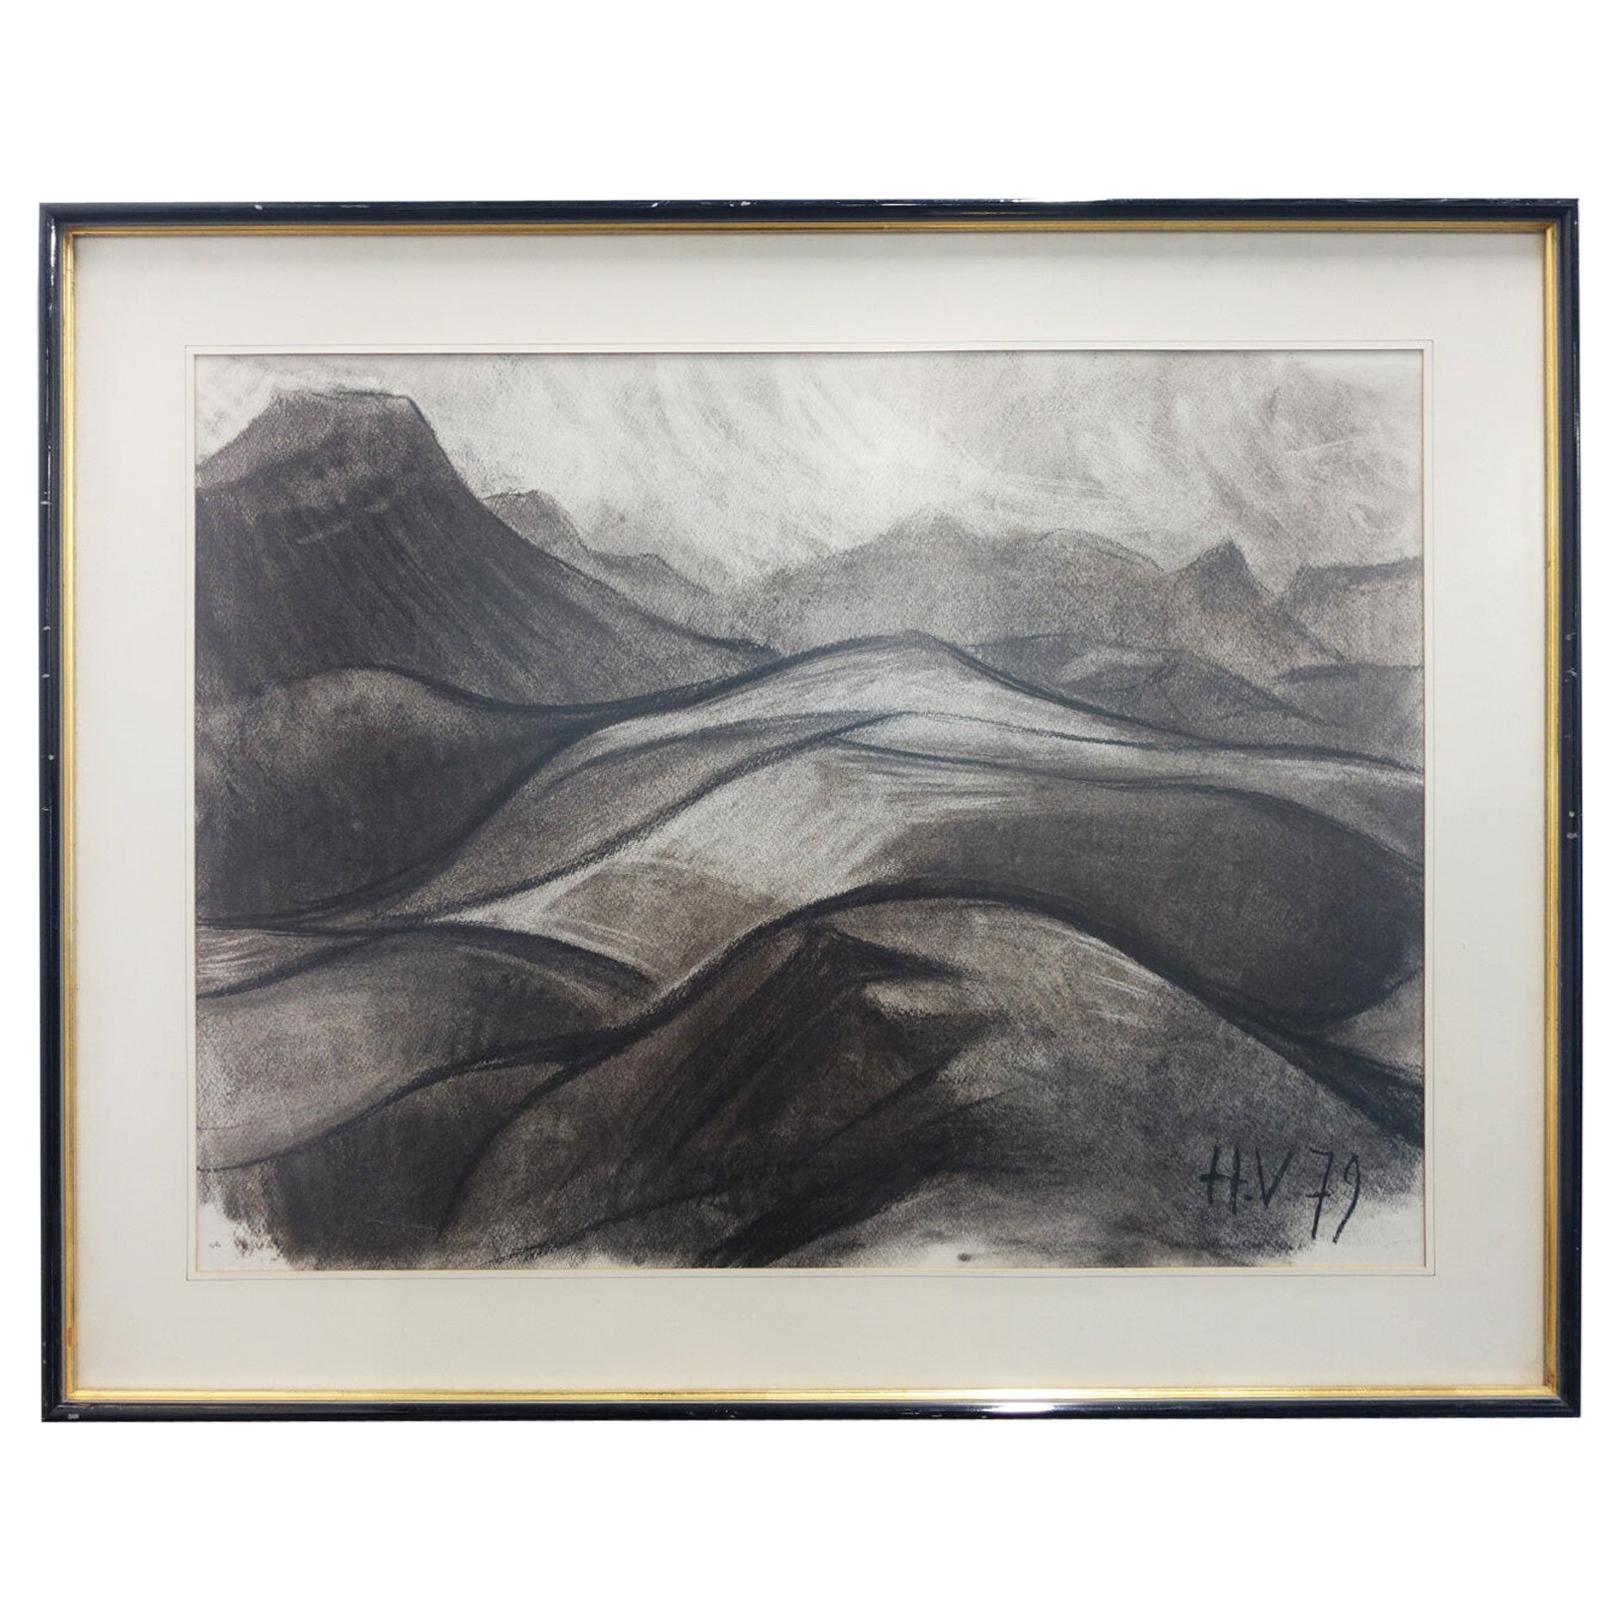 Henri Van Wynsberghe "Vallon", Charcoal Drawing, 1979